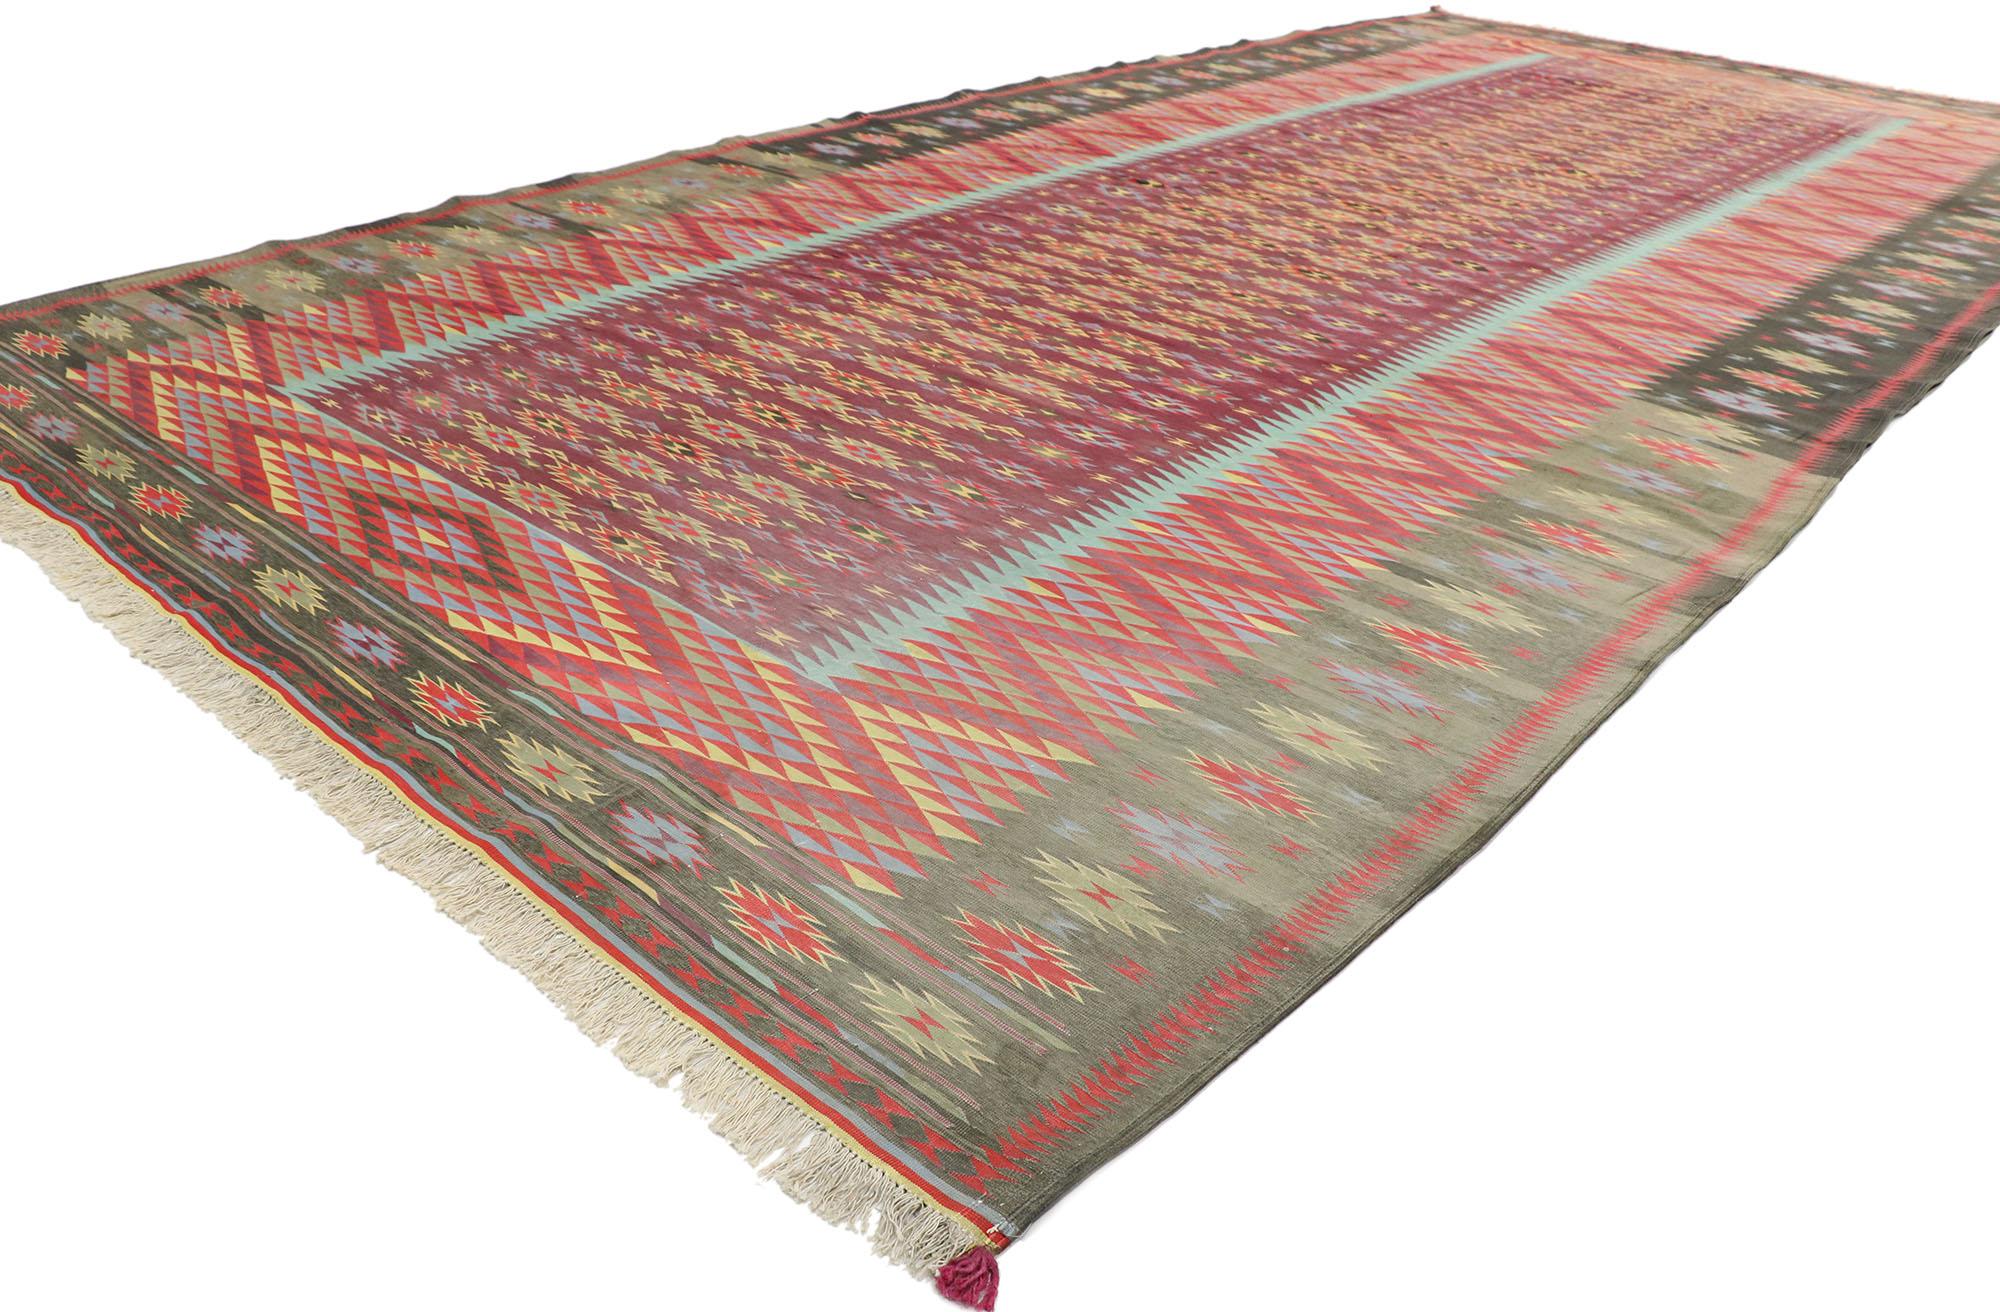 77540 Indischer Flachgewebe-Dhurrie-Teppich in Zimmergröße im modernen südwestlichen Stil. Dieser handgewebte, zimmergroße Dhurrie-Kilim aus alter indianischer Wolle voller Details und einem kühnen, ausdrucksstarken Design in Kombination mit